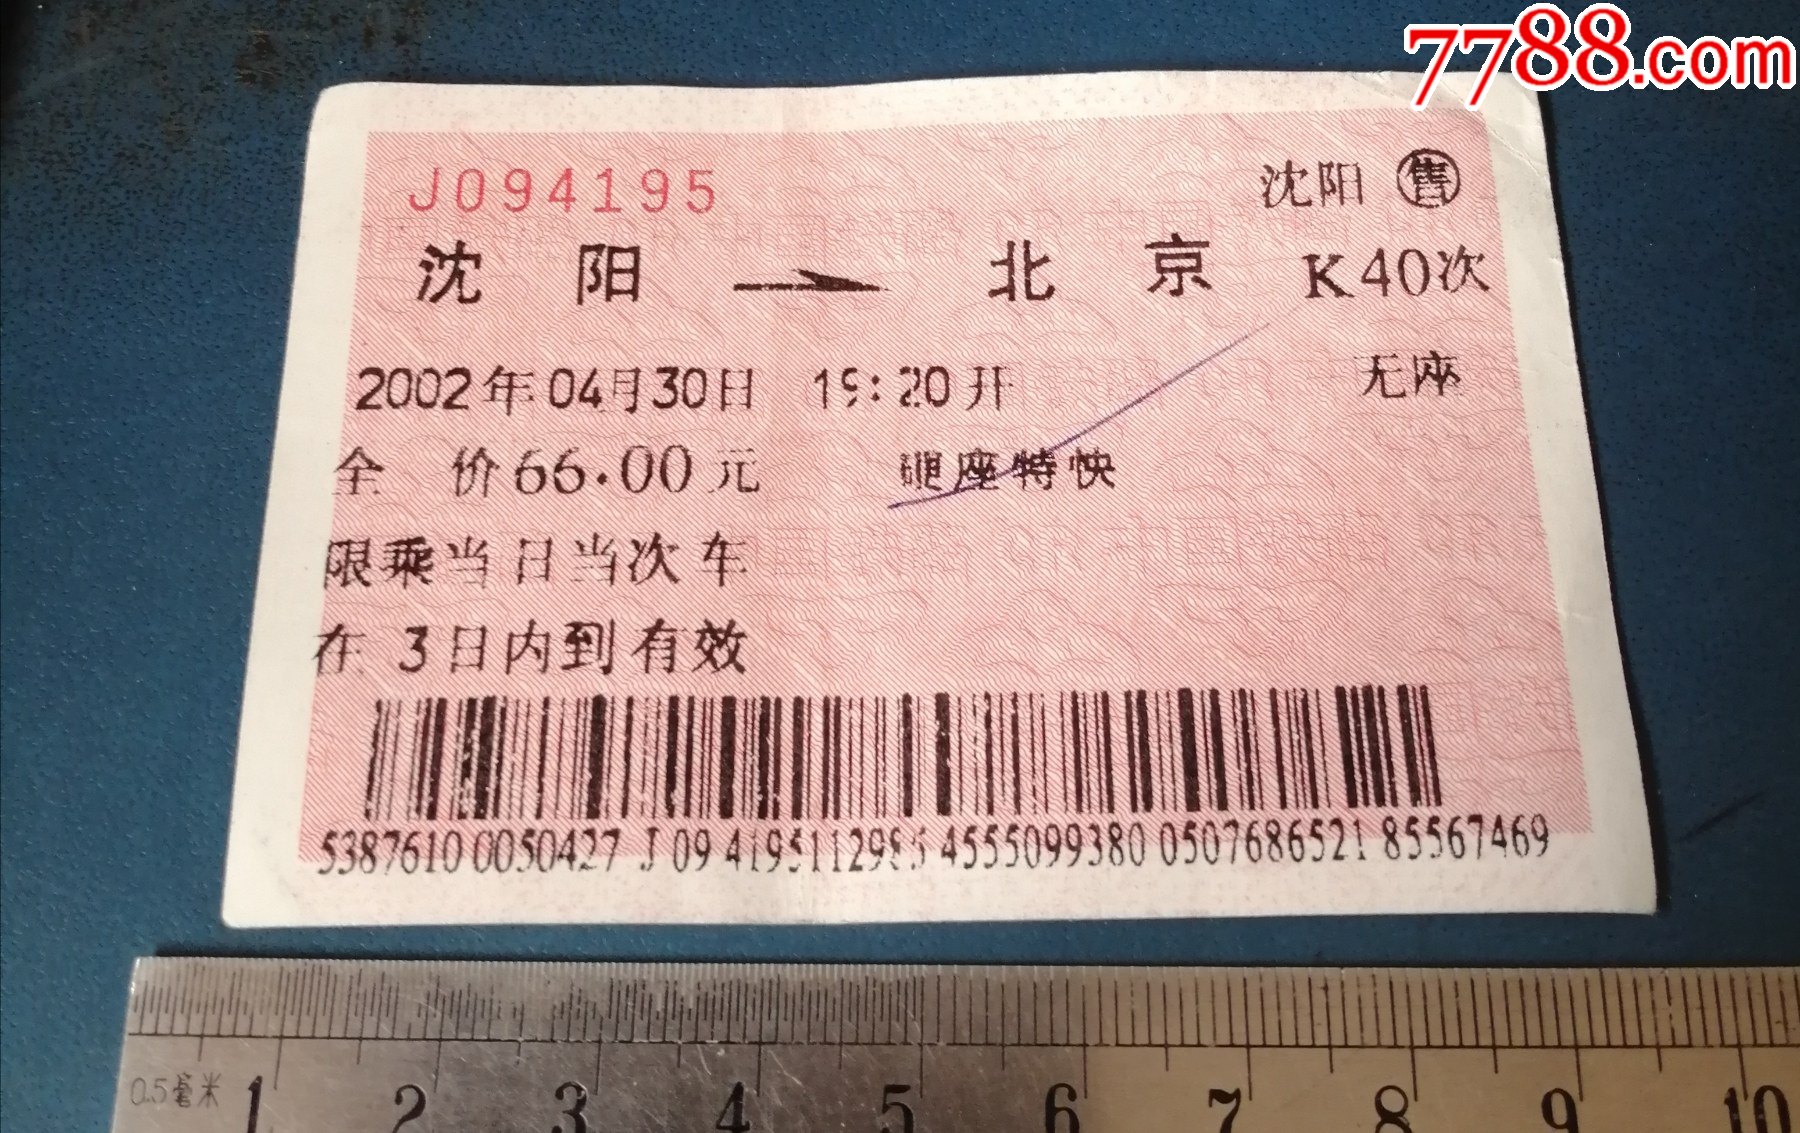 1996使用时间短的蓝火车票，蓝票，北京到沈阳-价格:50元-se84619722-火车票-零售-7788收藏__收藏热线